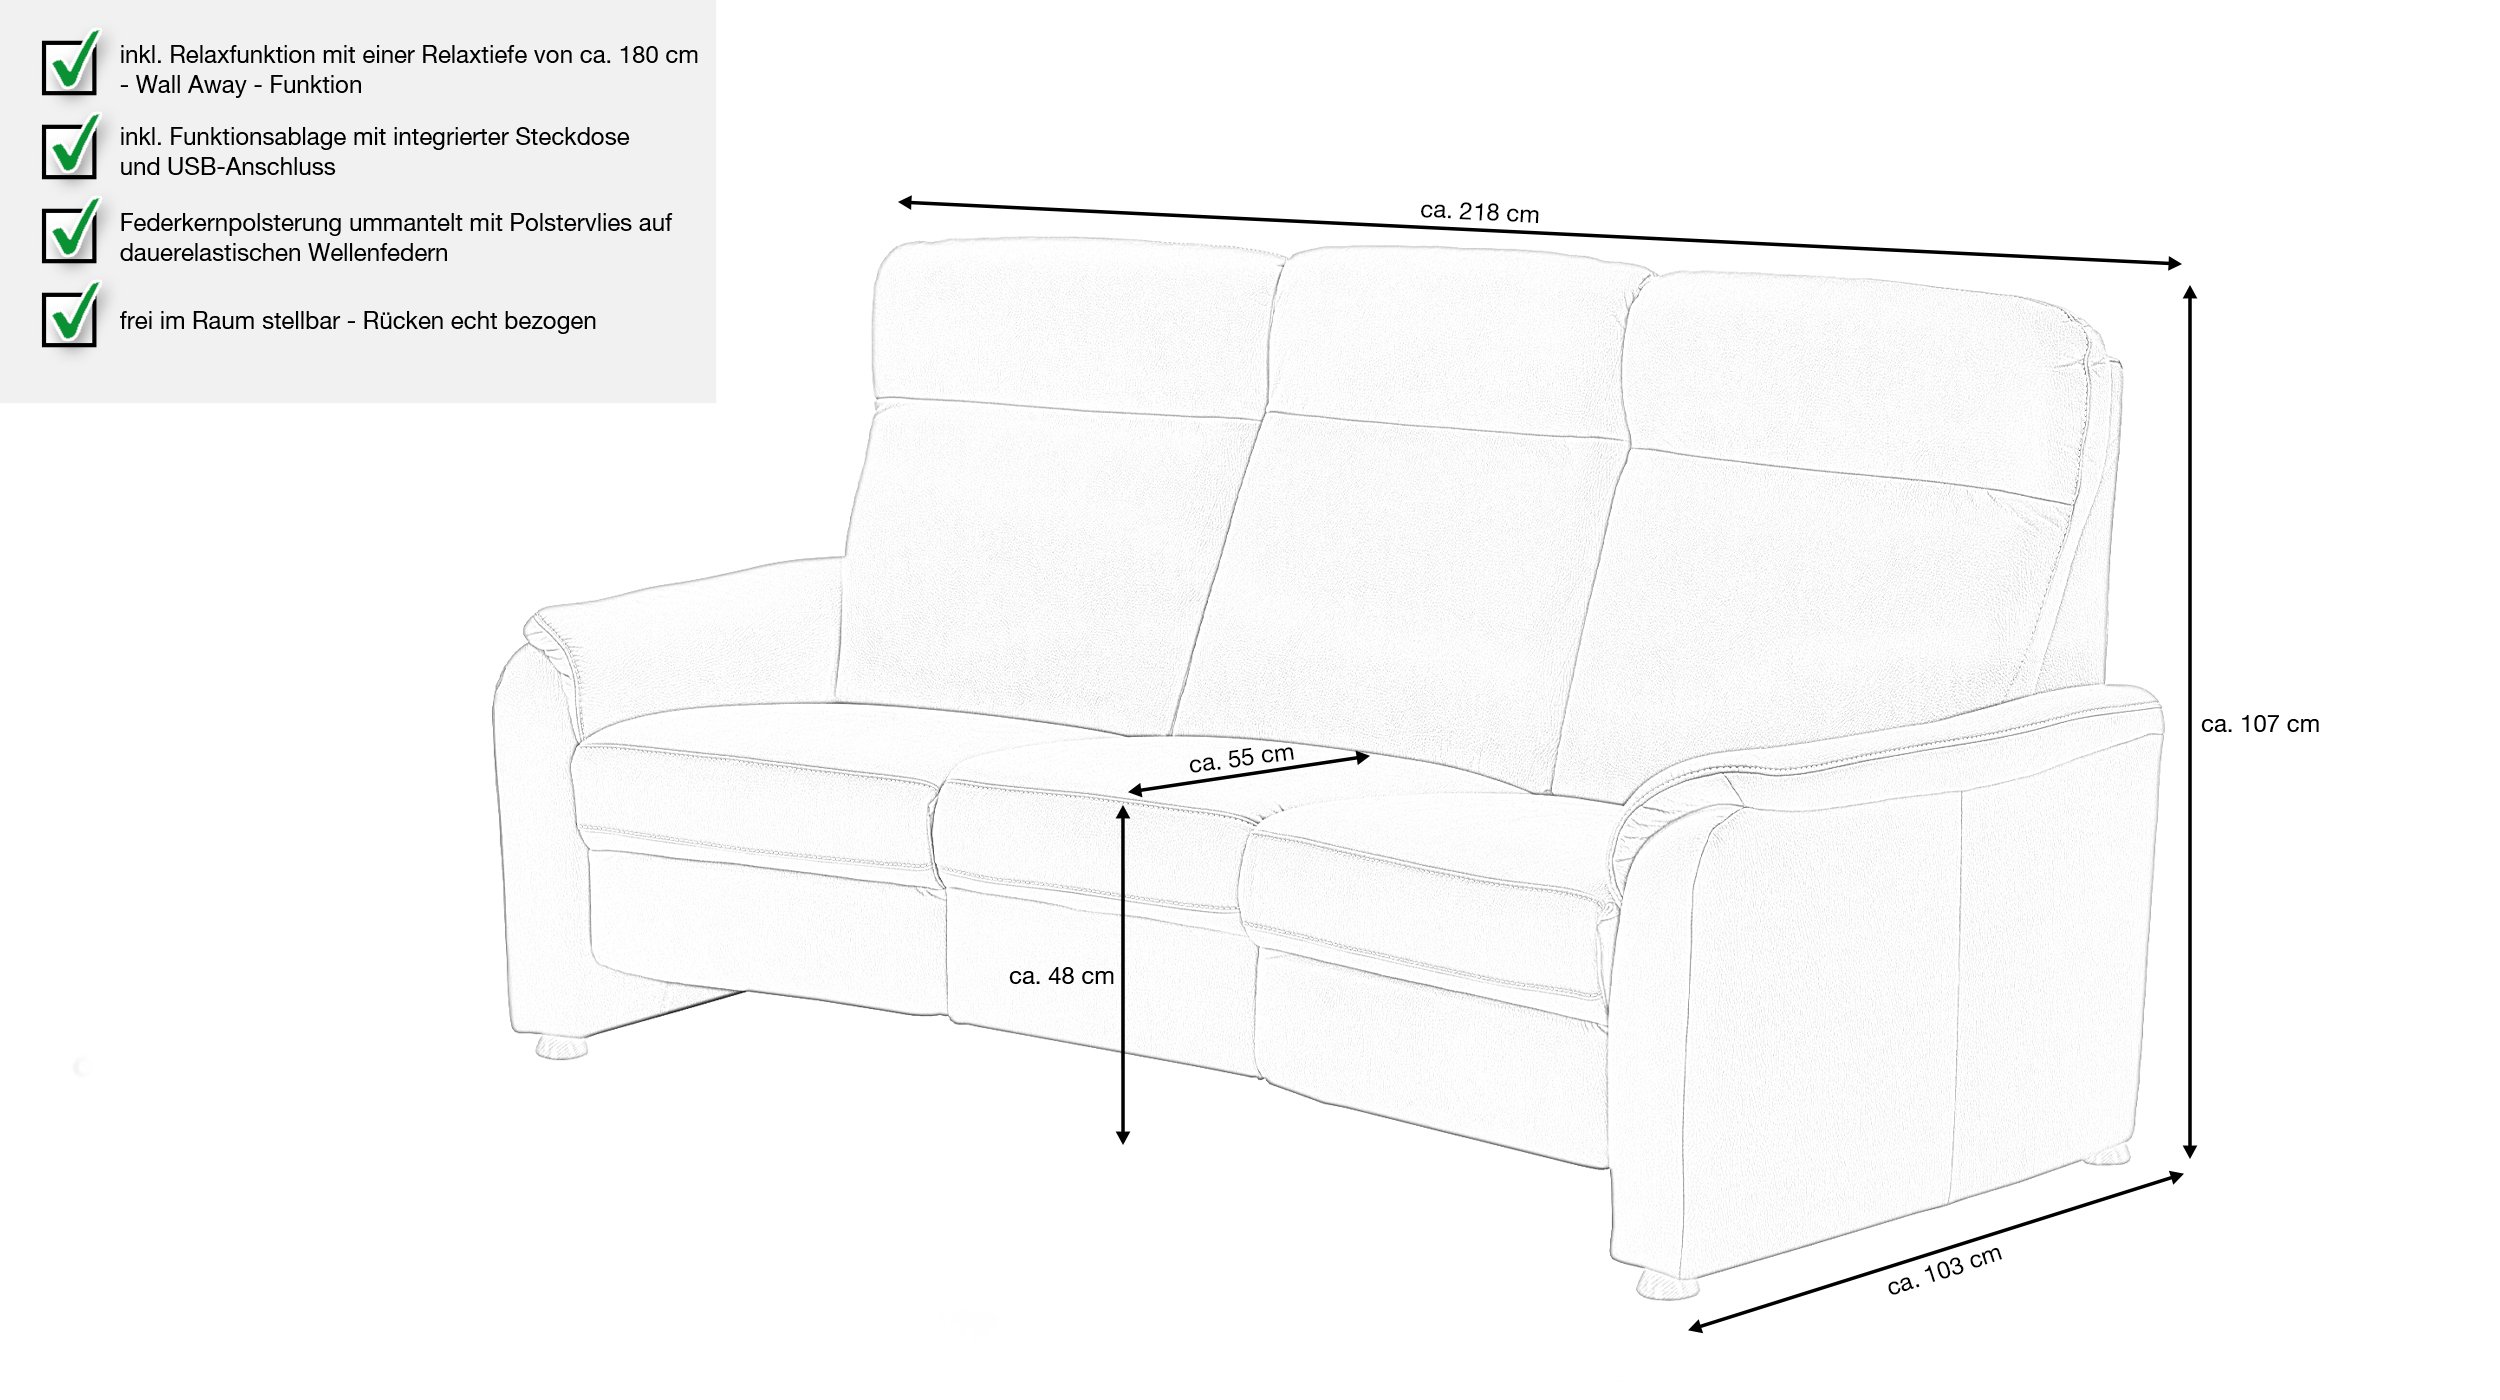 Couchliebe® Einzelsofa 3-Sitzer planbar - anthrazit - Premium Version - PENELOPE